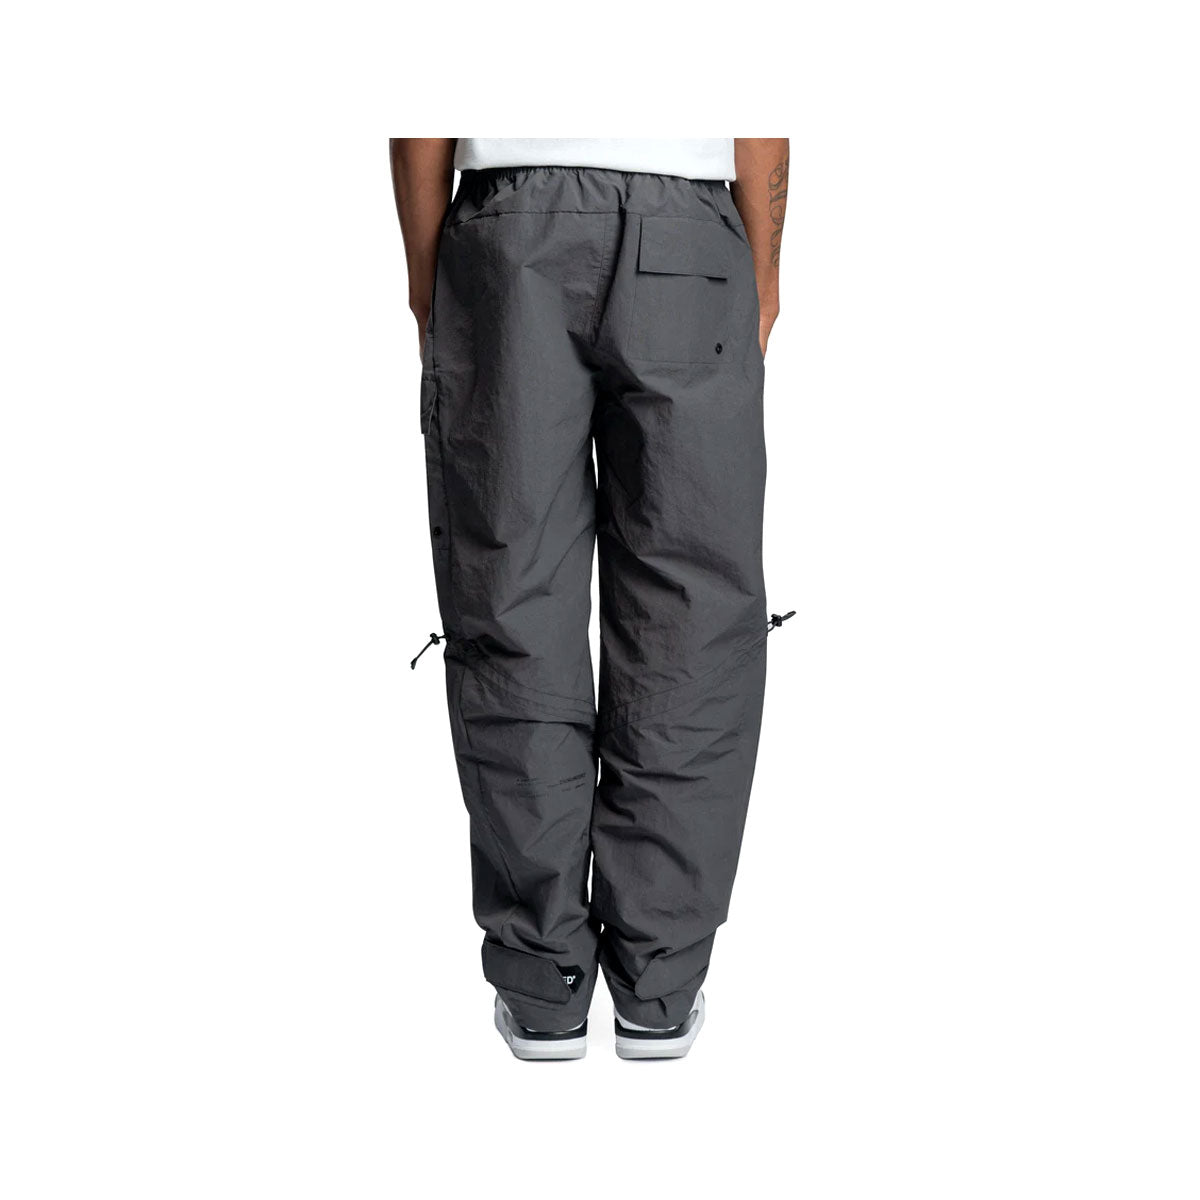 Air Jordan Men's 23 Engineered Woven Pants Dark Shadow